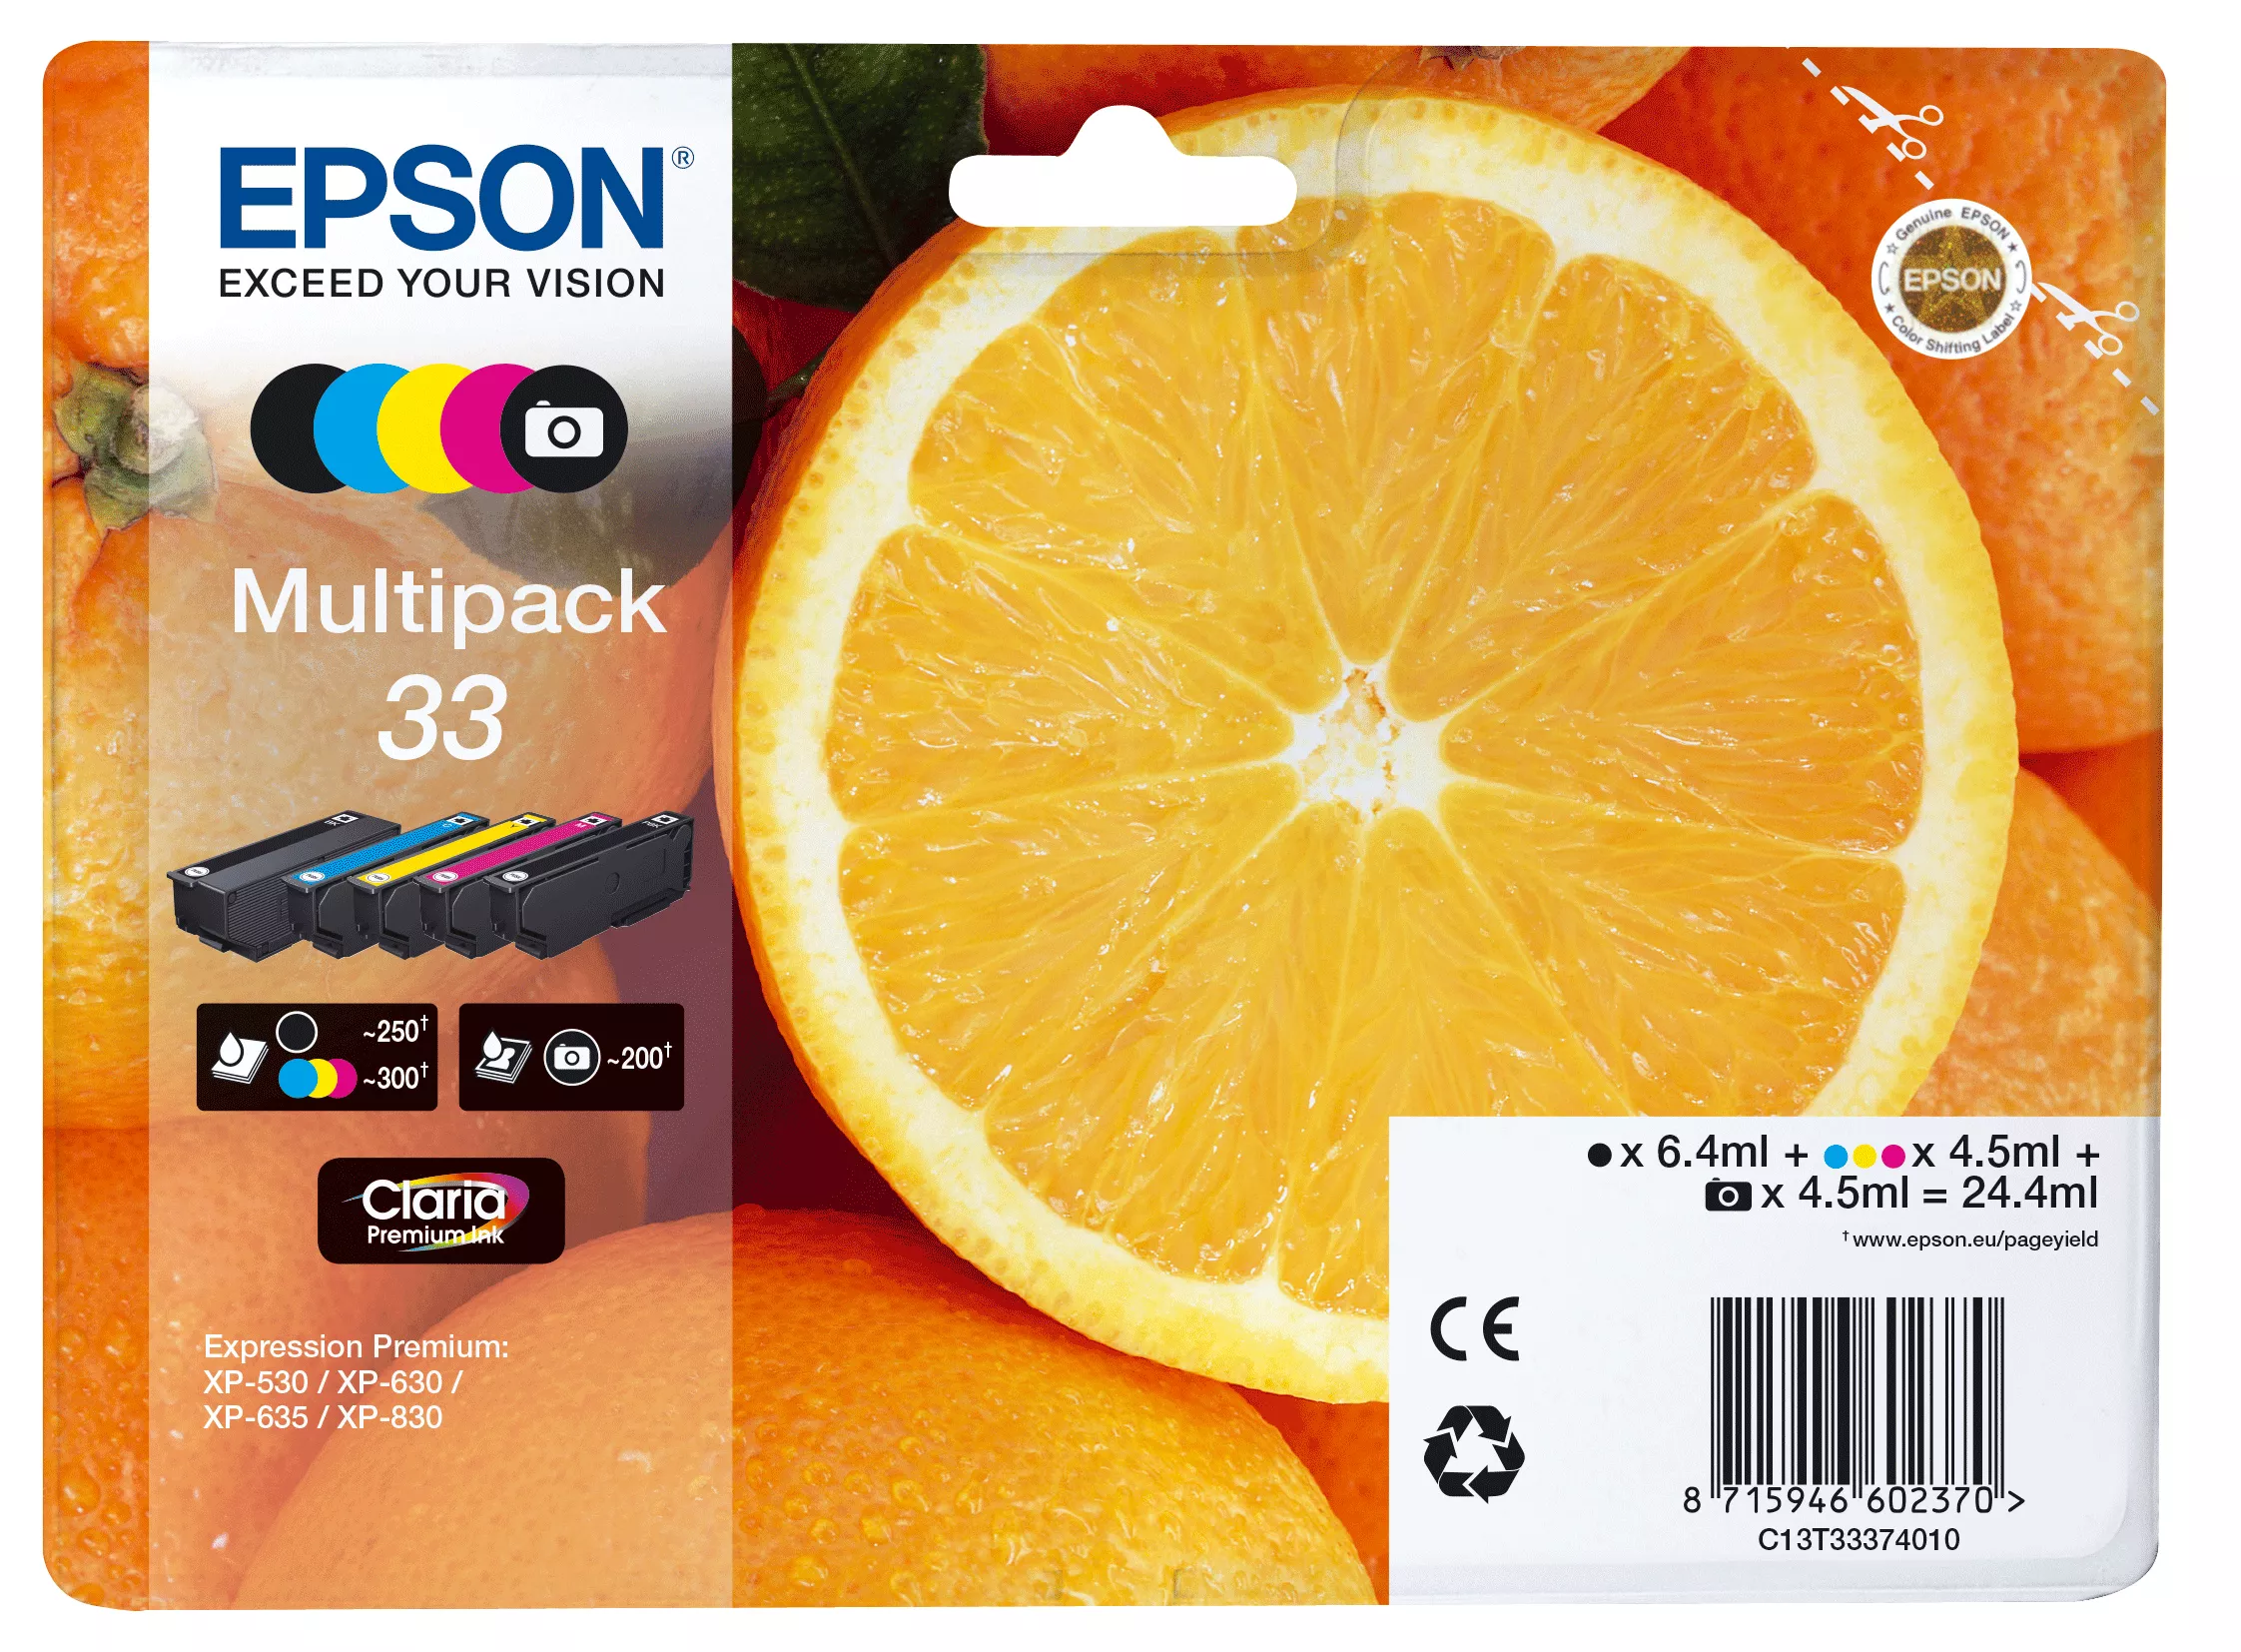 Achat EPSON Multipack Oranges non alarmé - Encre Claria au meilleur prix